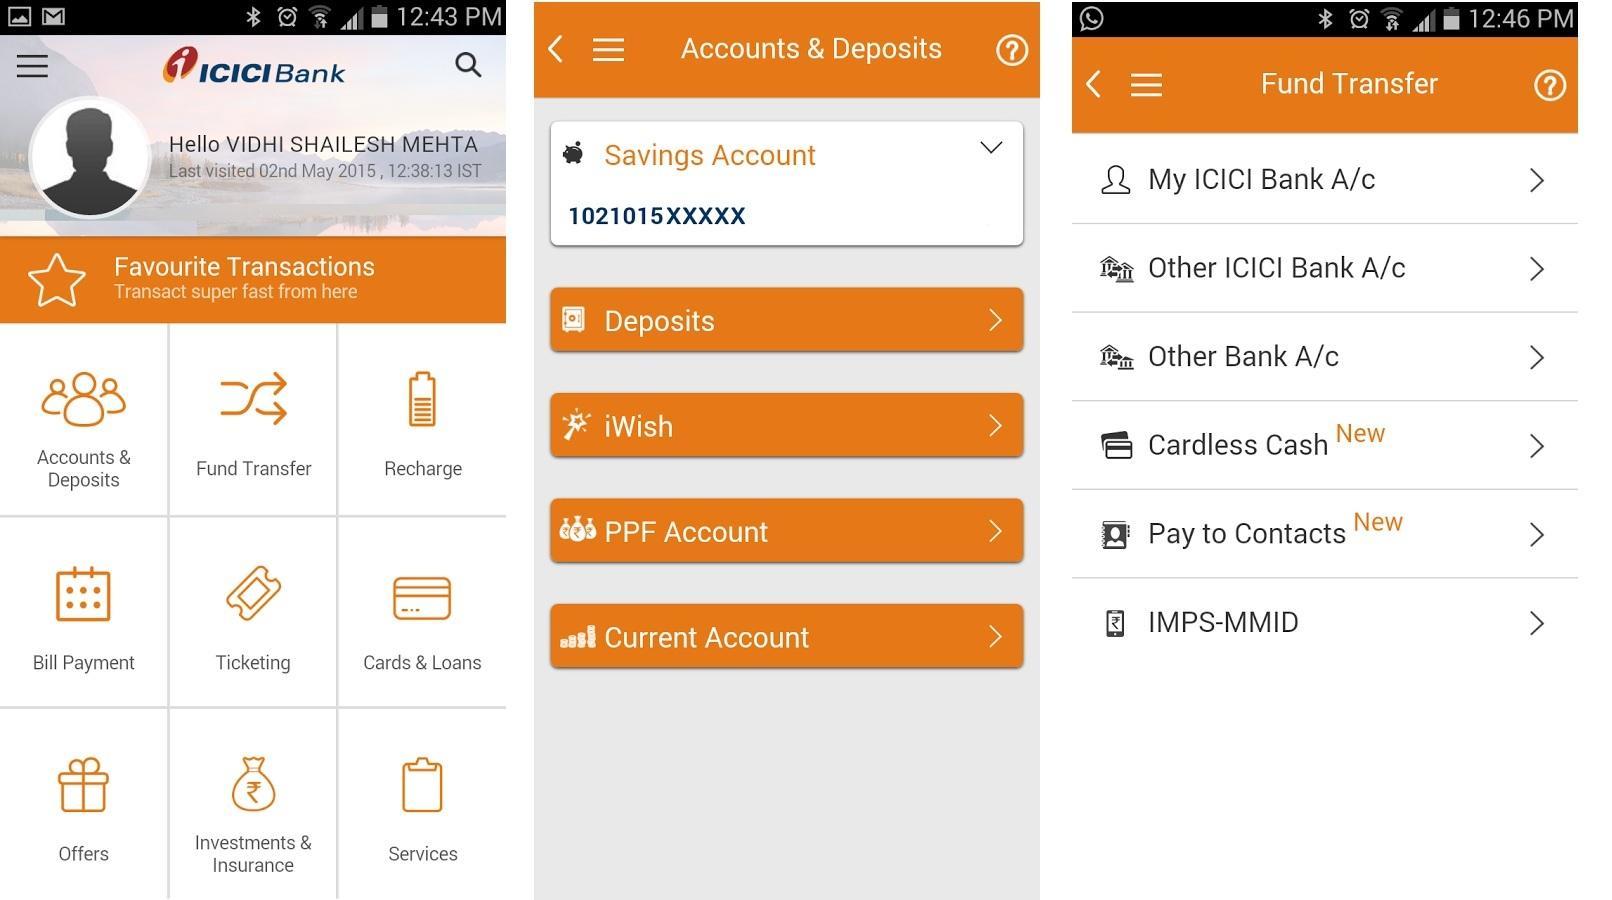 mobile banking के लिए ये है टाॅप 10 ऐप्स, जानिए इनके बारे में 